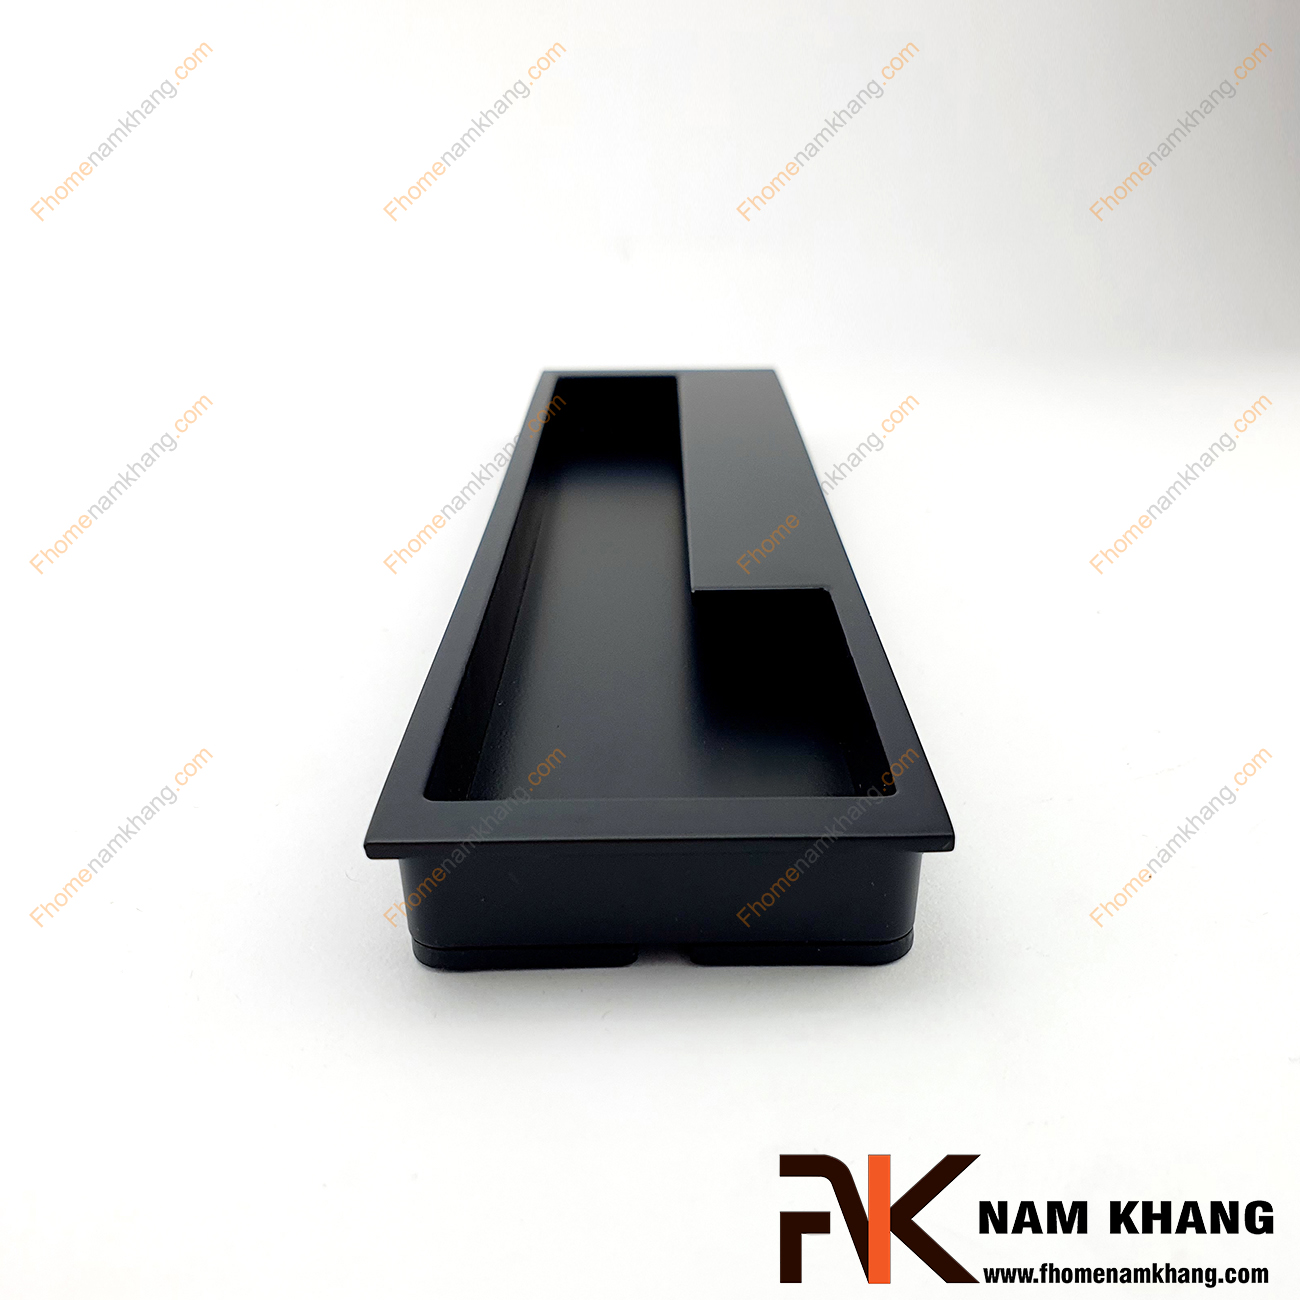 Tay nắm âm tủ màu vàng mờ NK438-192VM là loại tay nắm chuyên dùng cho các loại tủ đặt ở những nơi có không gian hạn chế hoặc dùng để nâng cao tính thẫm mỹ của sản phẩm.